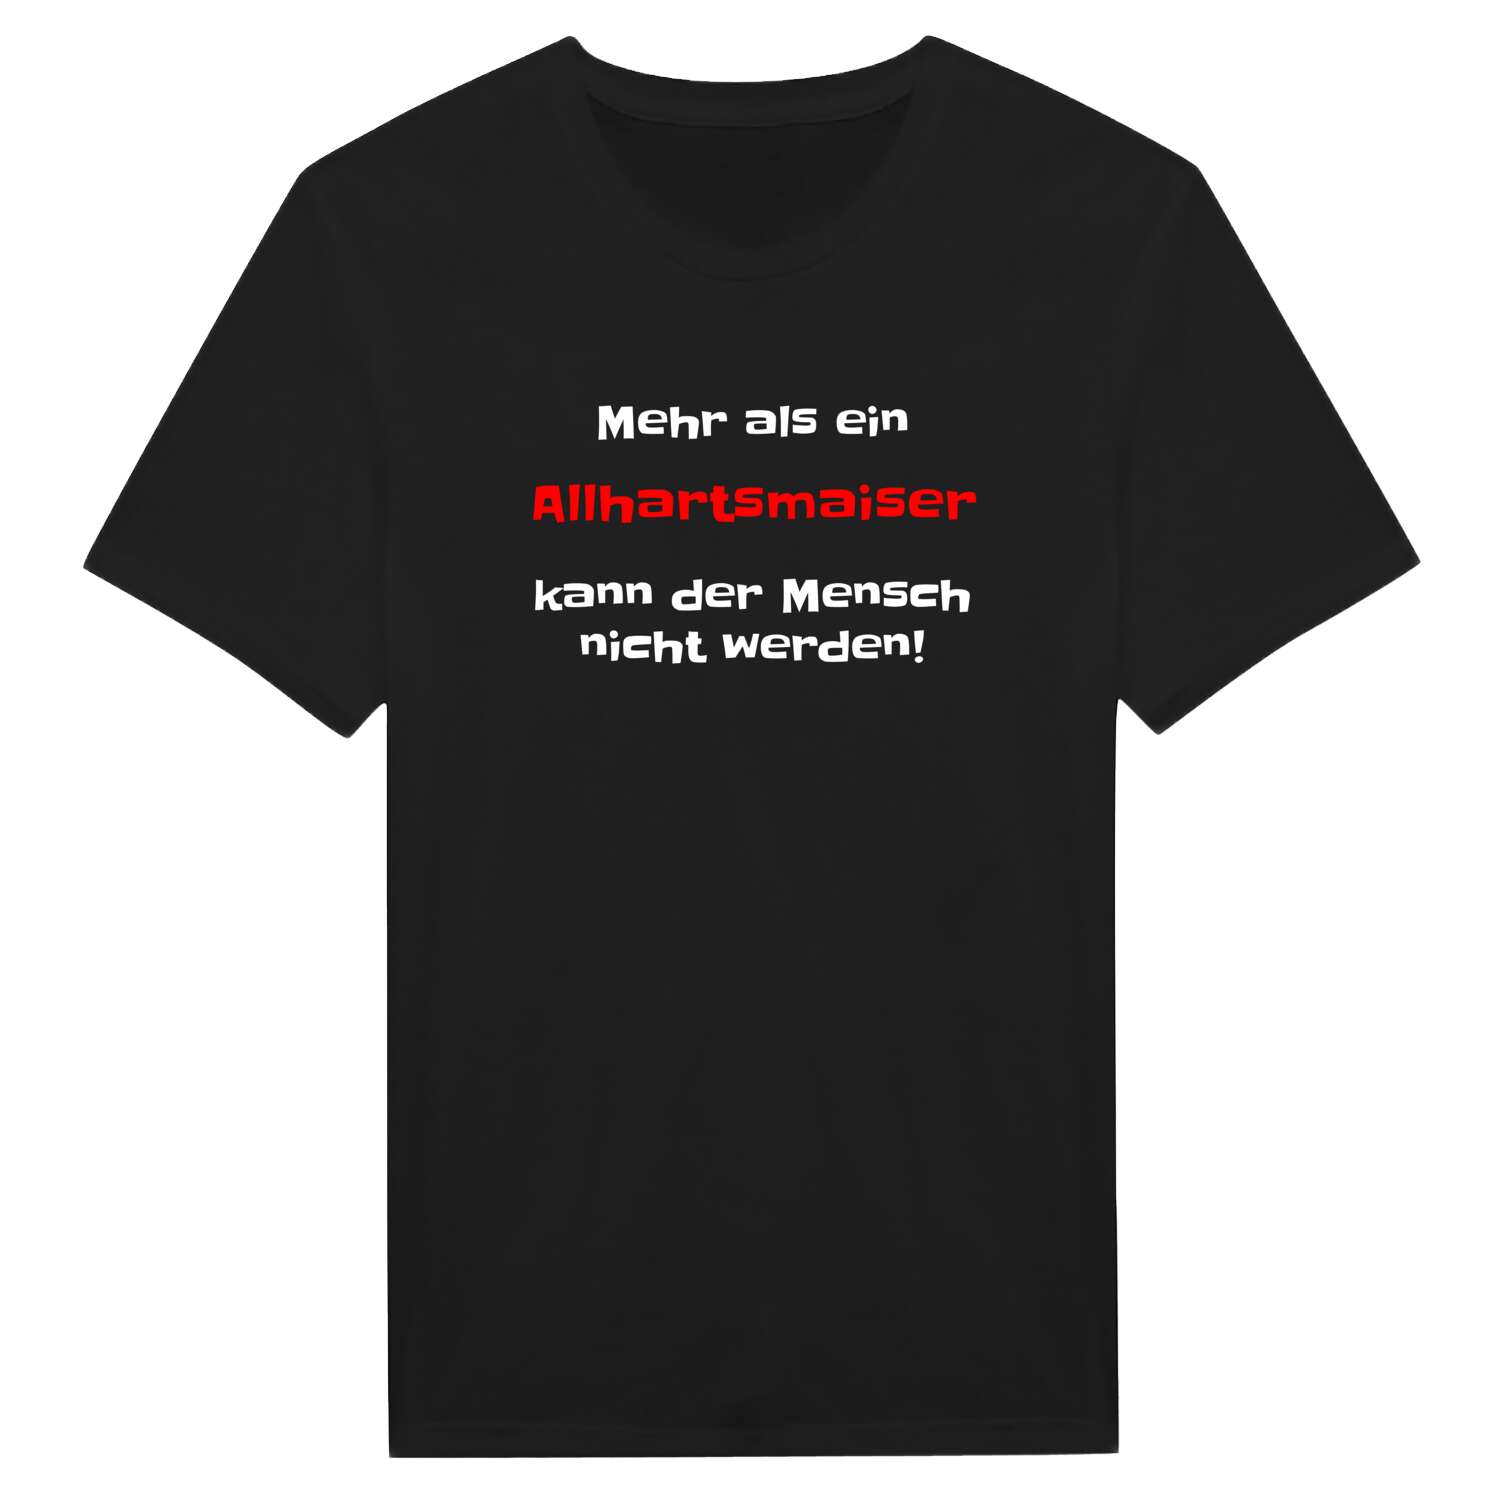 Allhartsmais T-Shirt »Mehr als ein«